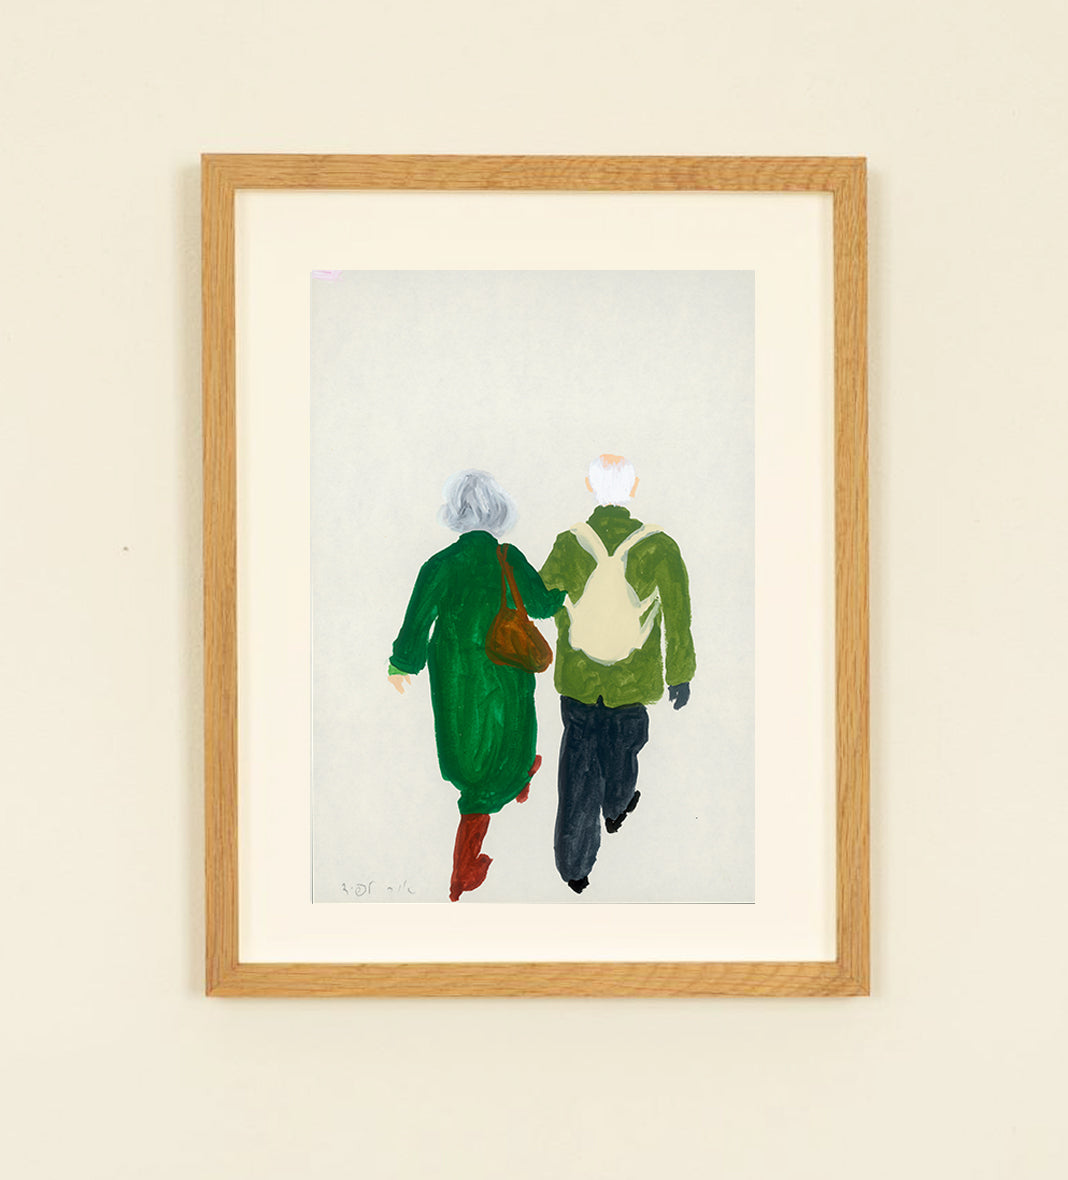 ציור מקורי- זוג עם מעילים ירוקים